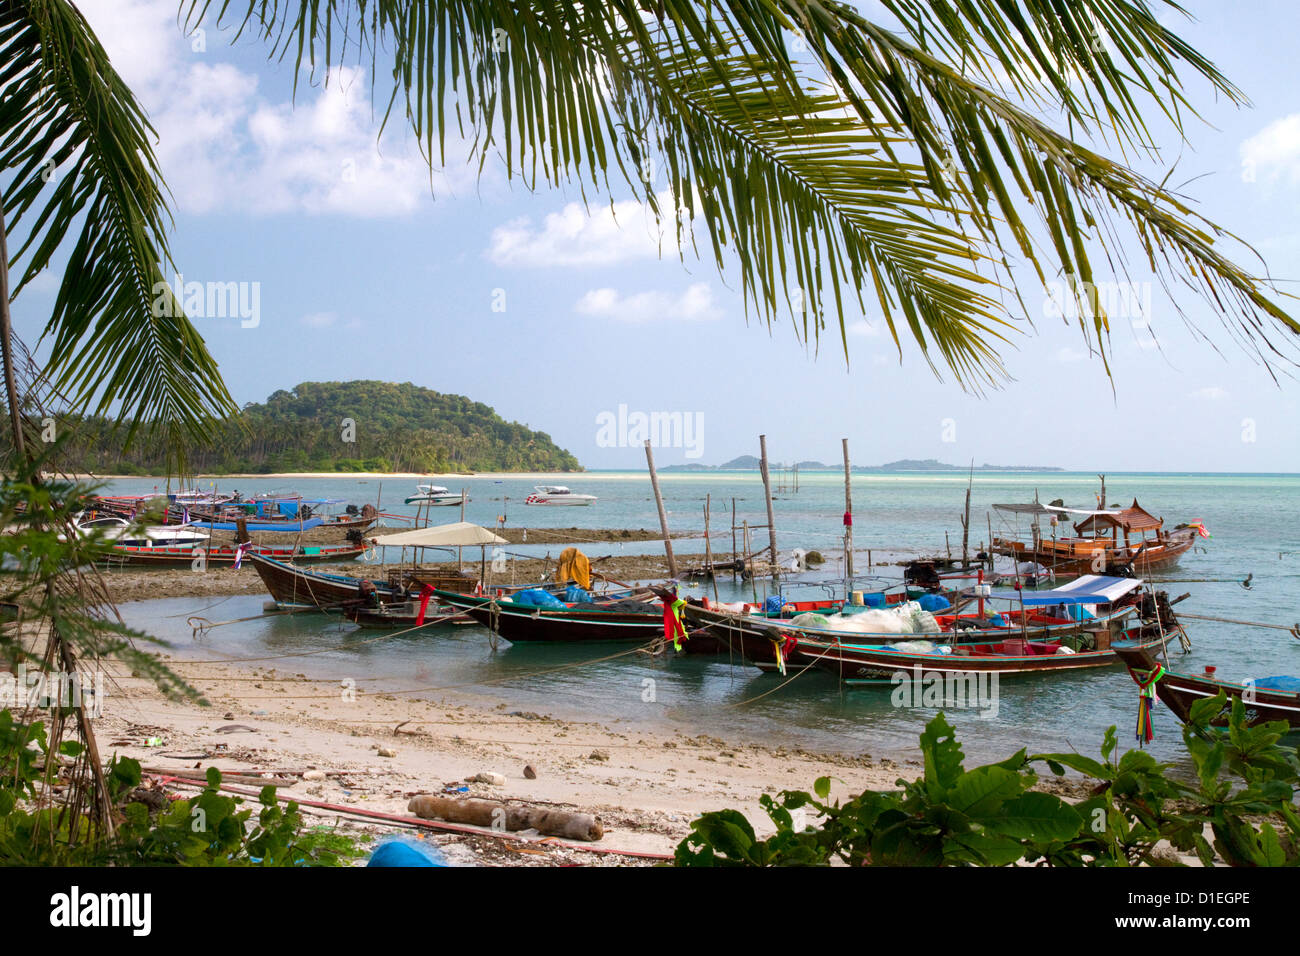 Bateaux de pêche dans le golfe de Thaïlande sur l'île de Ko Samui, Thaïlande. Banque D'Images